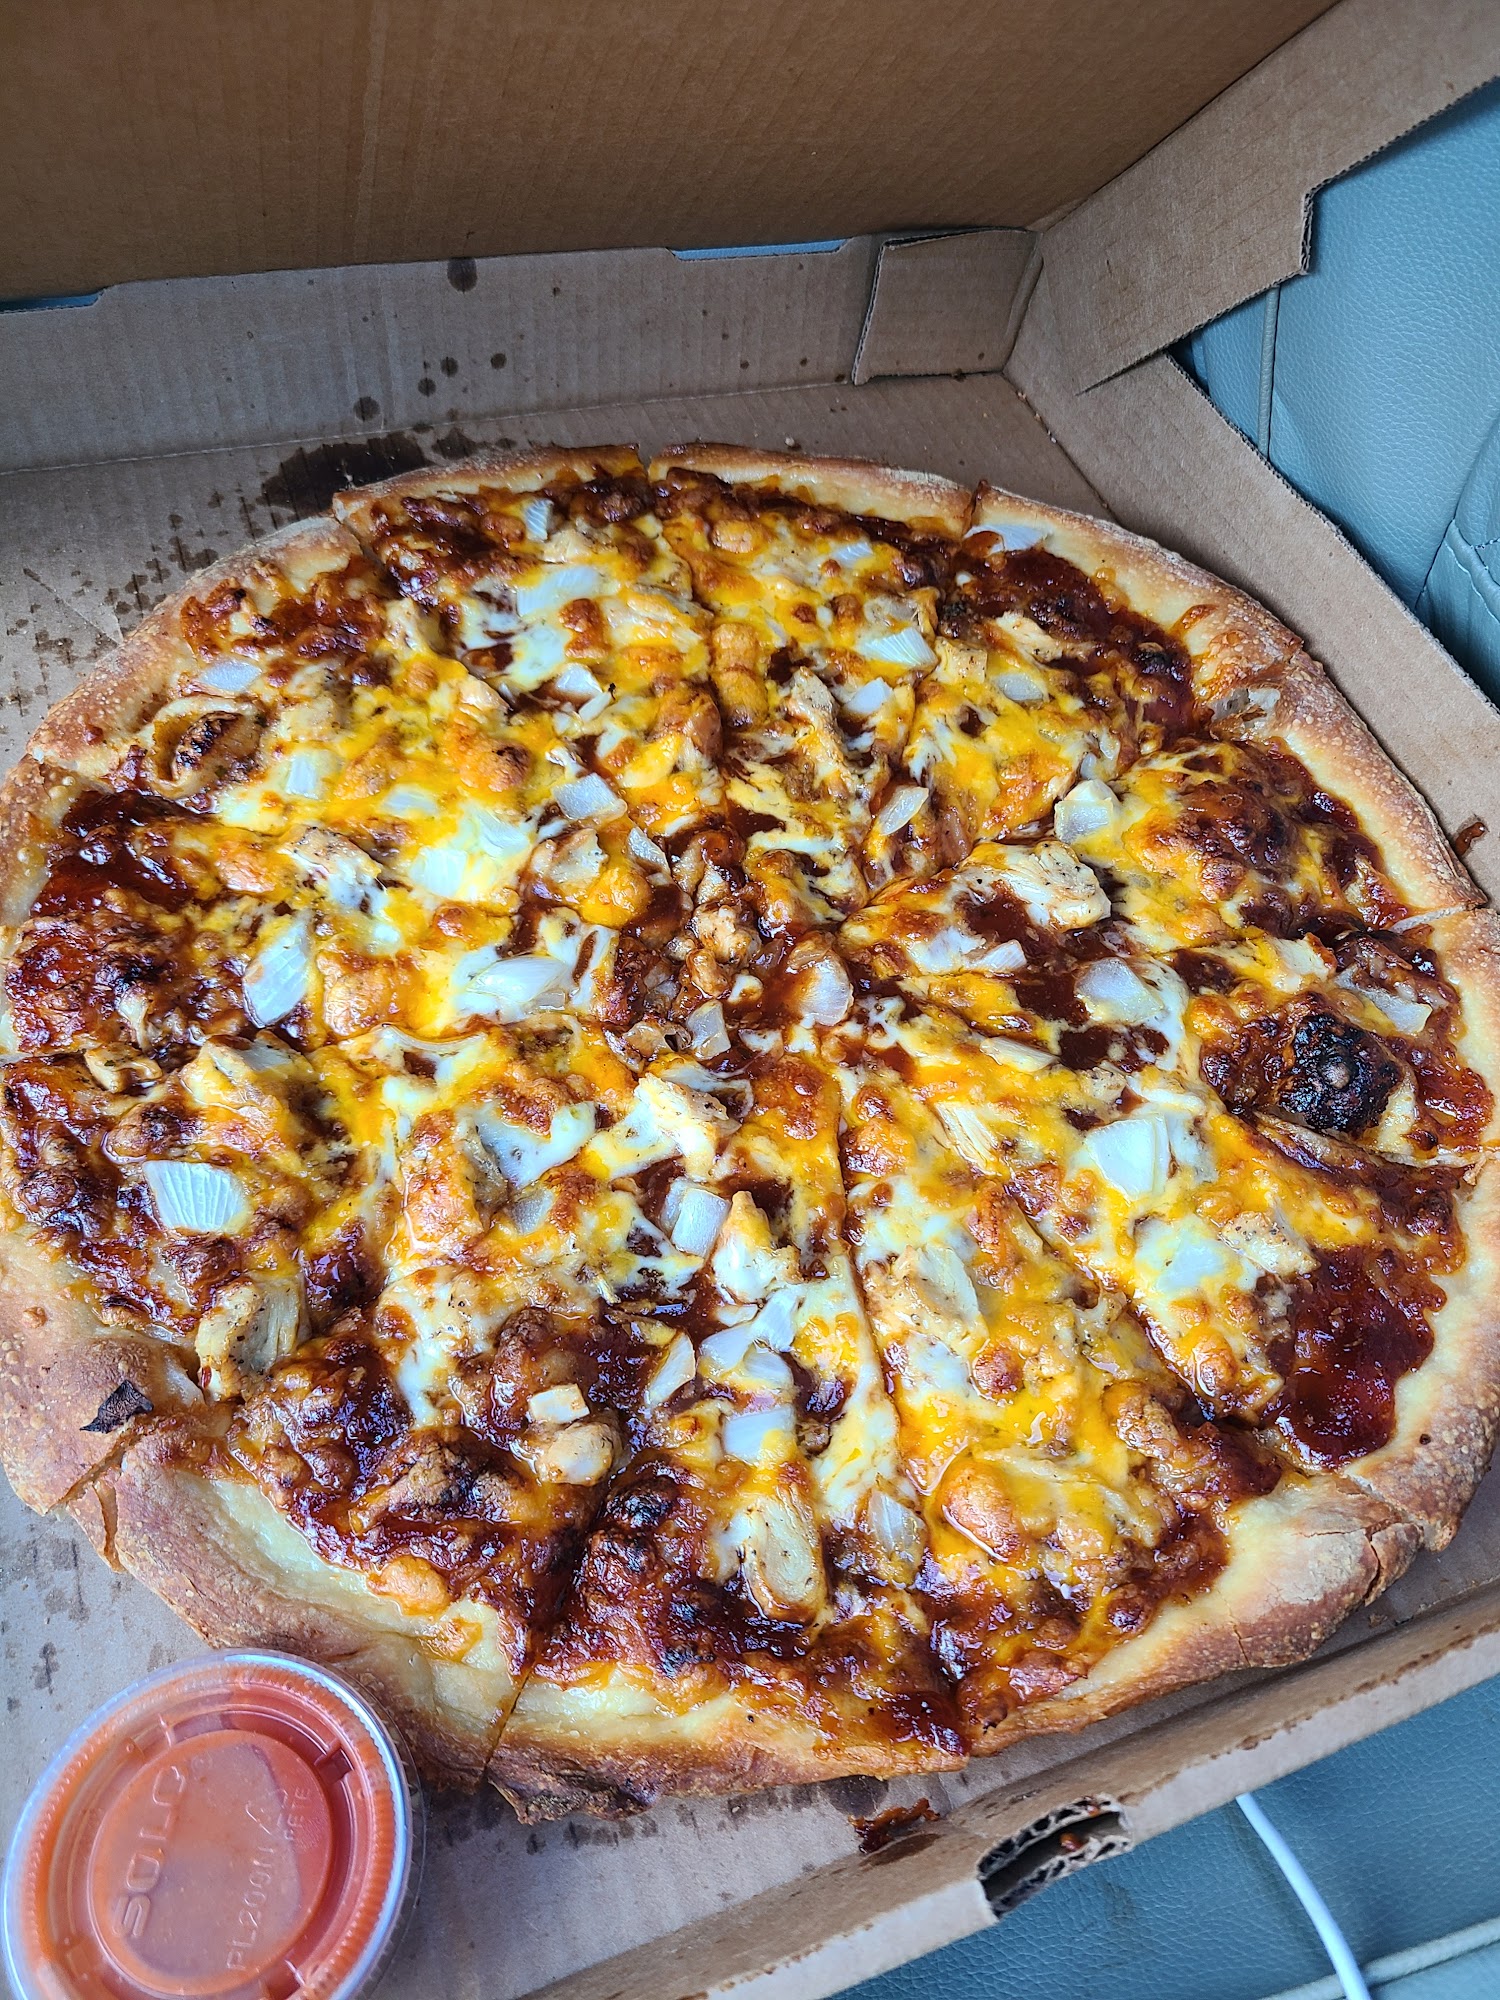 CONGIN'S PIZZA - CHARDON